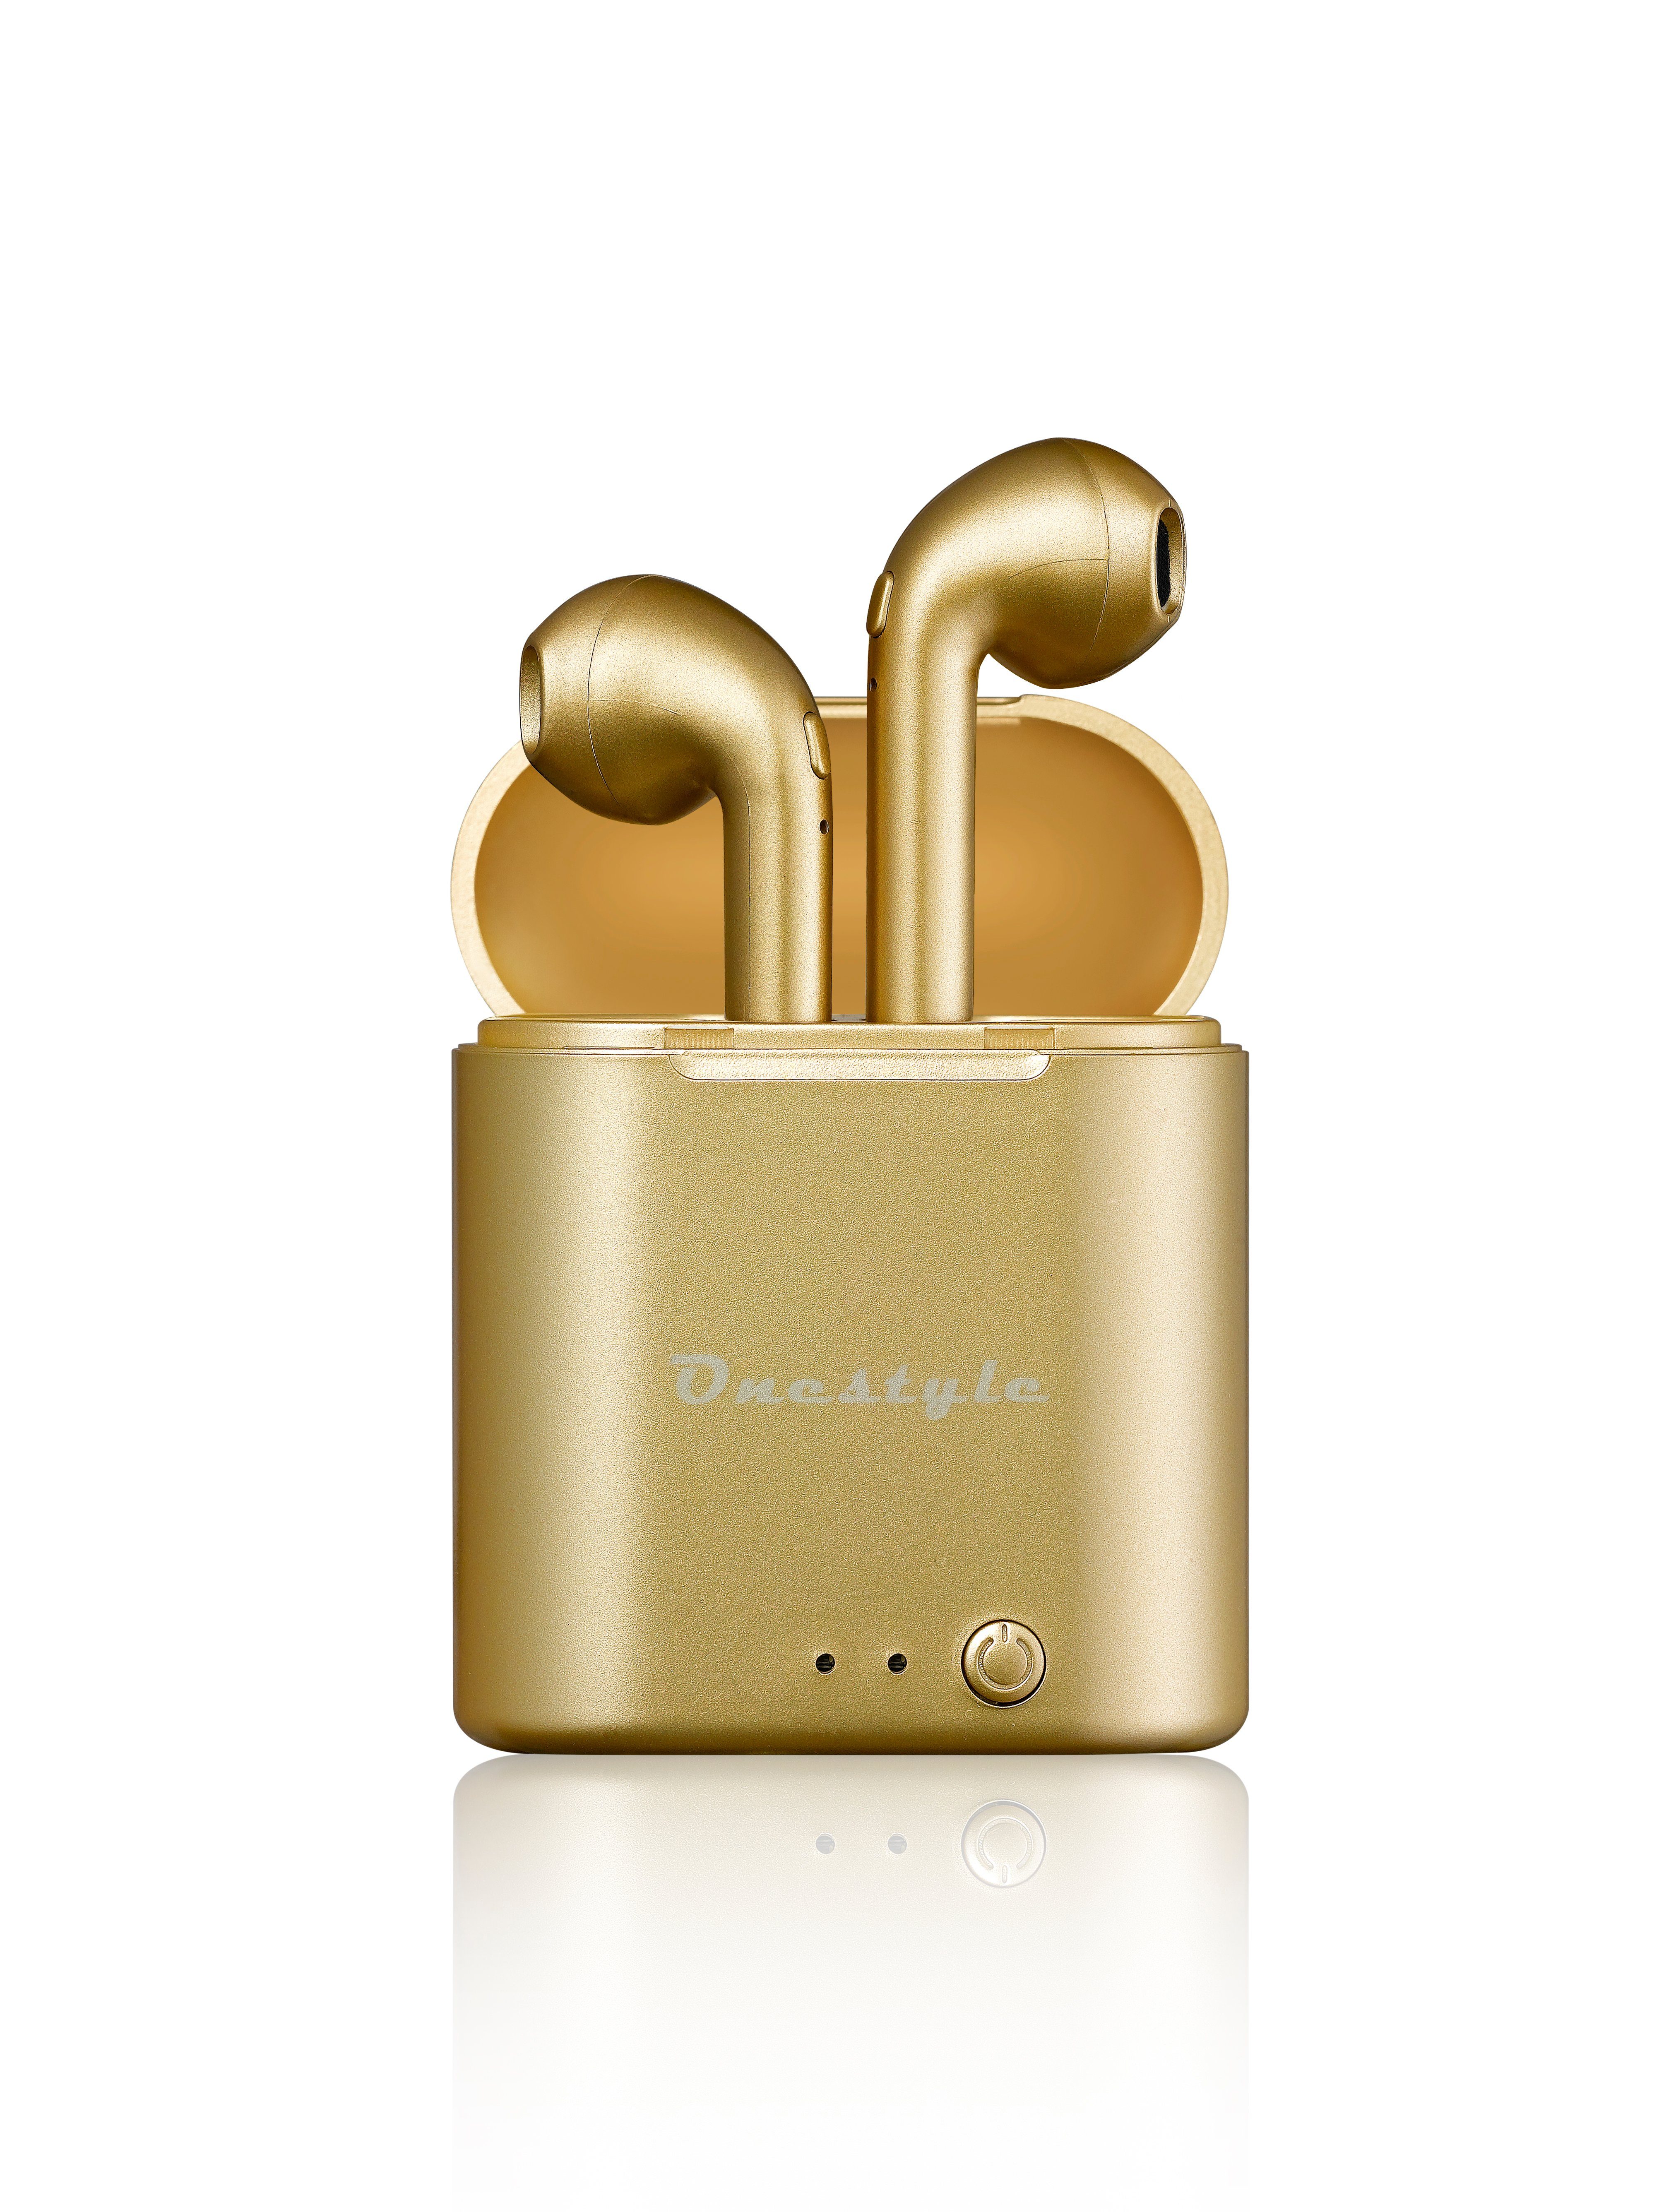 Onestyle »Onestyle TWS-BT-V7 Bluetooth In Ear Headset mit Ladebox, gold«  wireless In-Ear-Kopfhörer (In-Ear Kopfhörer mit integriertem Mikrofon)  online kaufen | OTTO